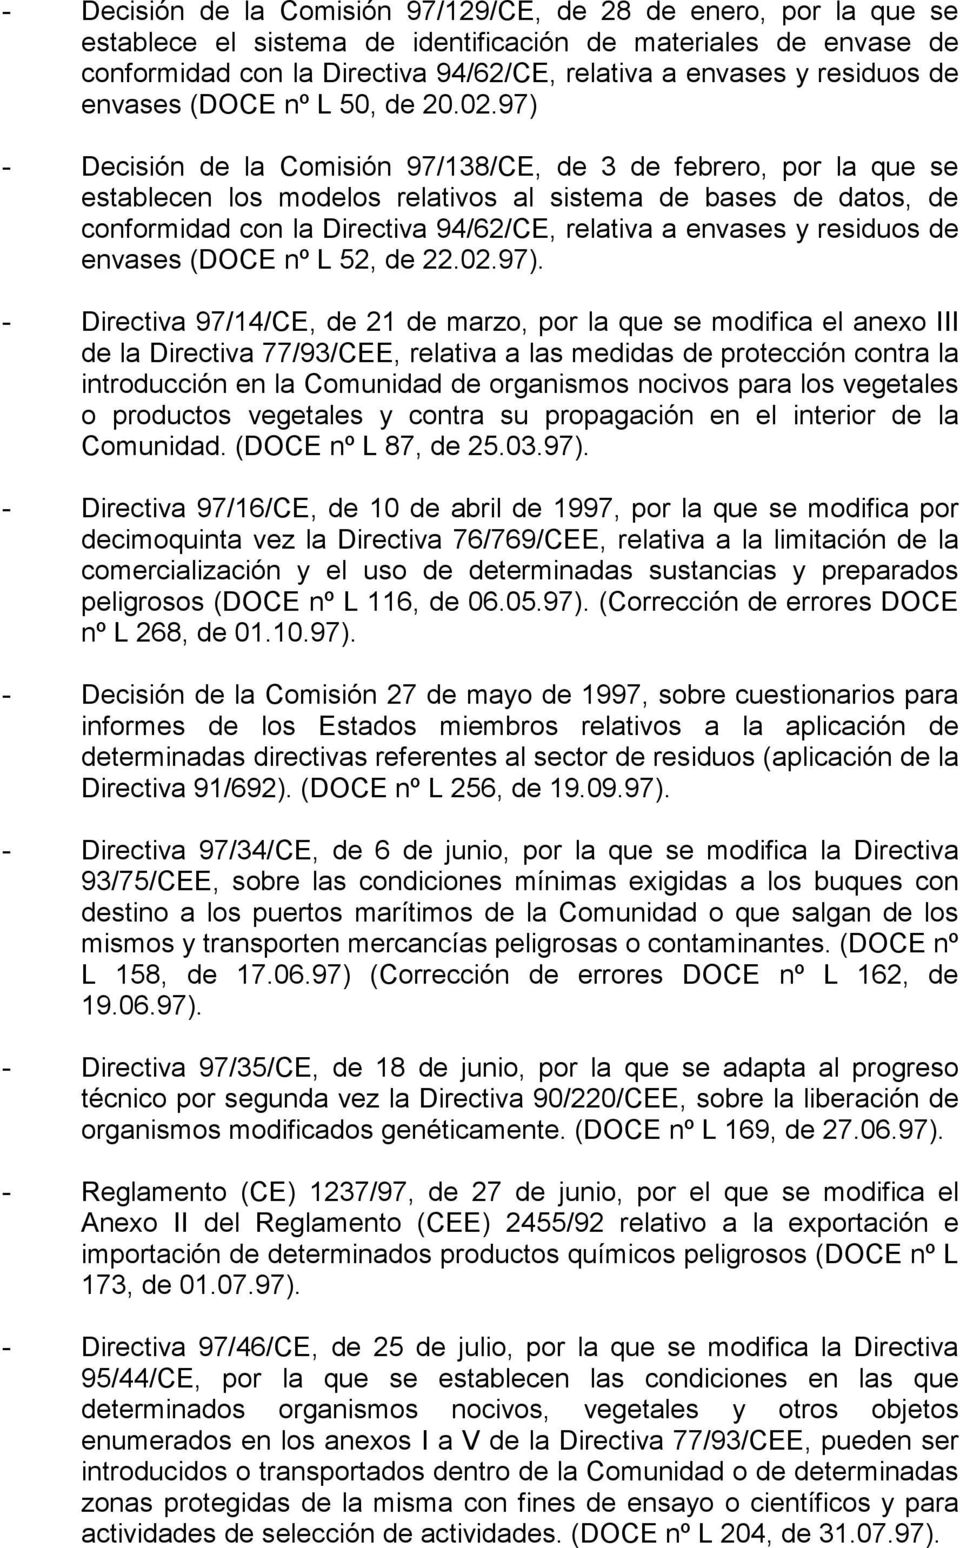 97) - Decisión de la Comisión 97/138/CE, de 3 de febrero, por la que se establecen los modelos relativos al sistema de bases de datos, de conformidad con la Directiva 94/62/CE, relativa a envases y